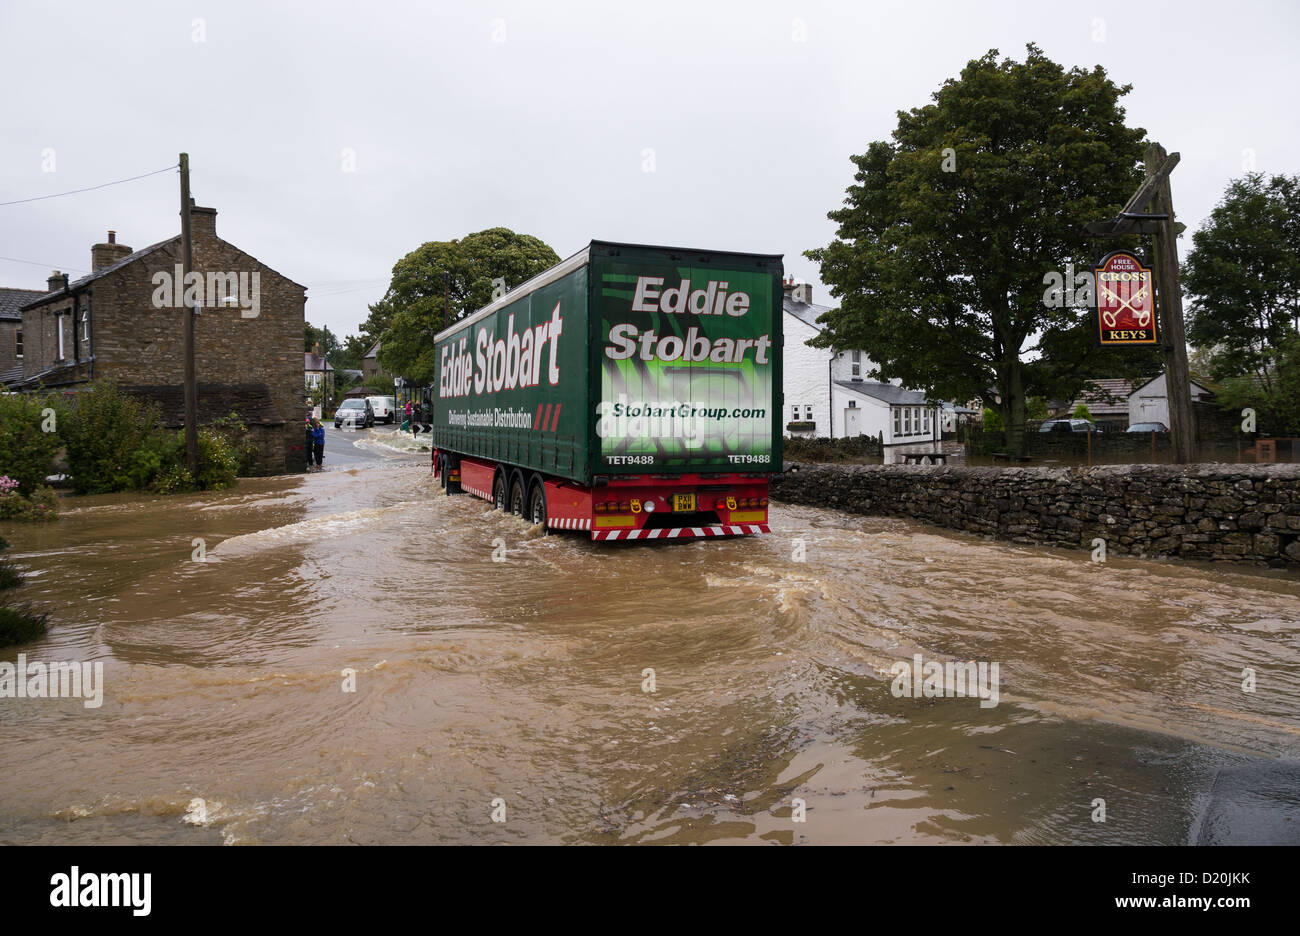 Eddie Sobart camion guidando attraverso l'acqua di allagamento in Bellerby, North Yorkshire, 2013 Foto Stock